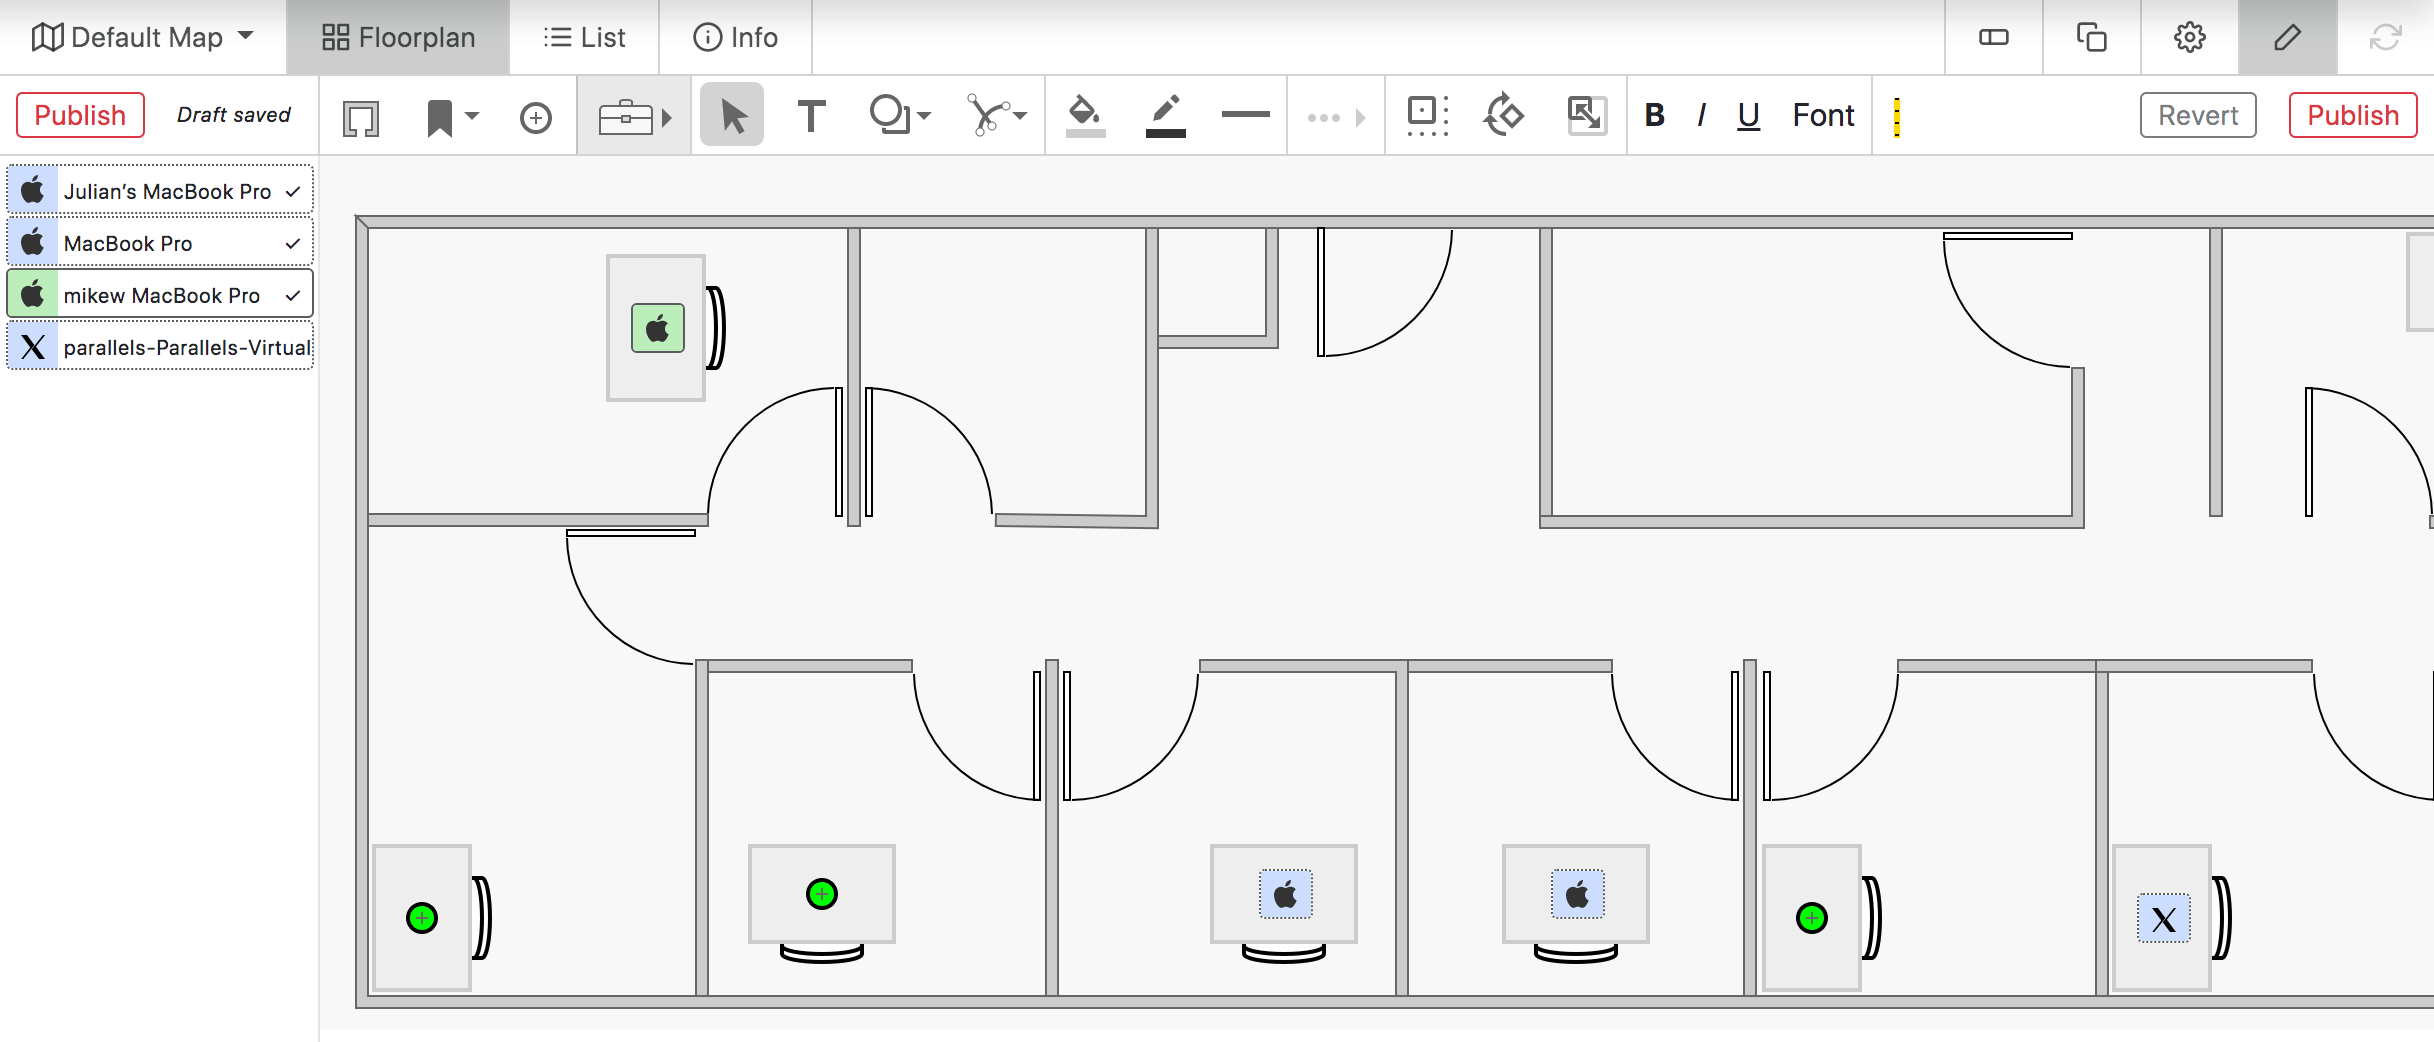 Floorplan Editor Tools